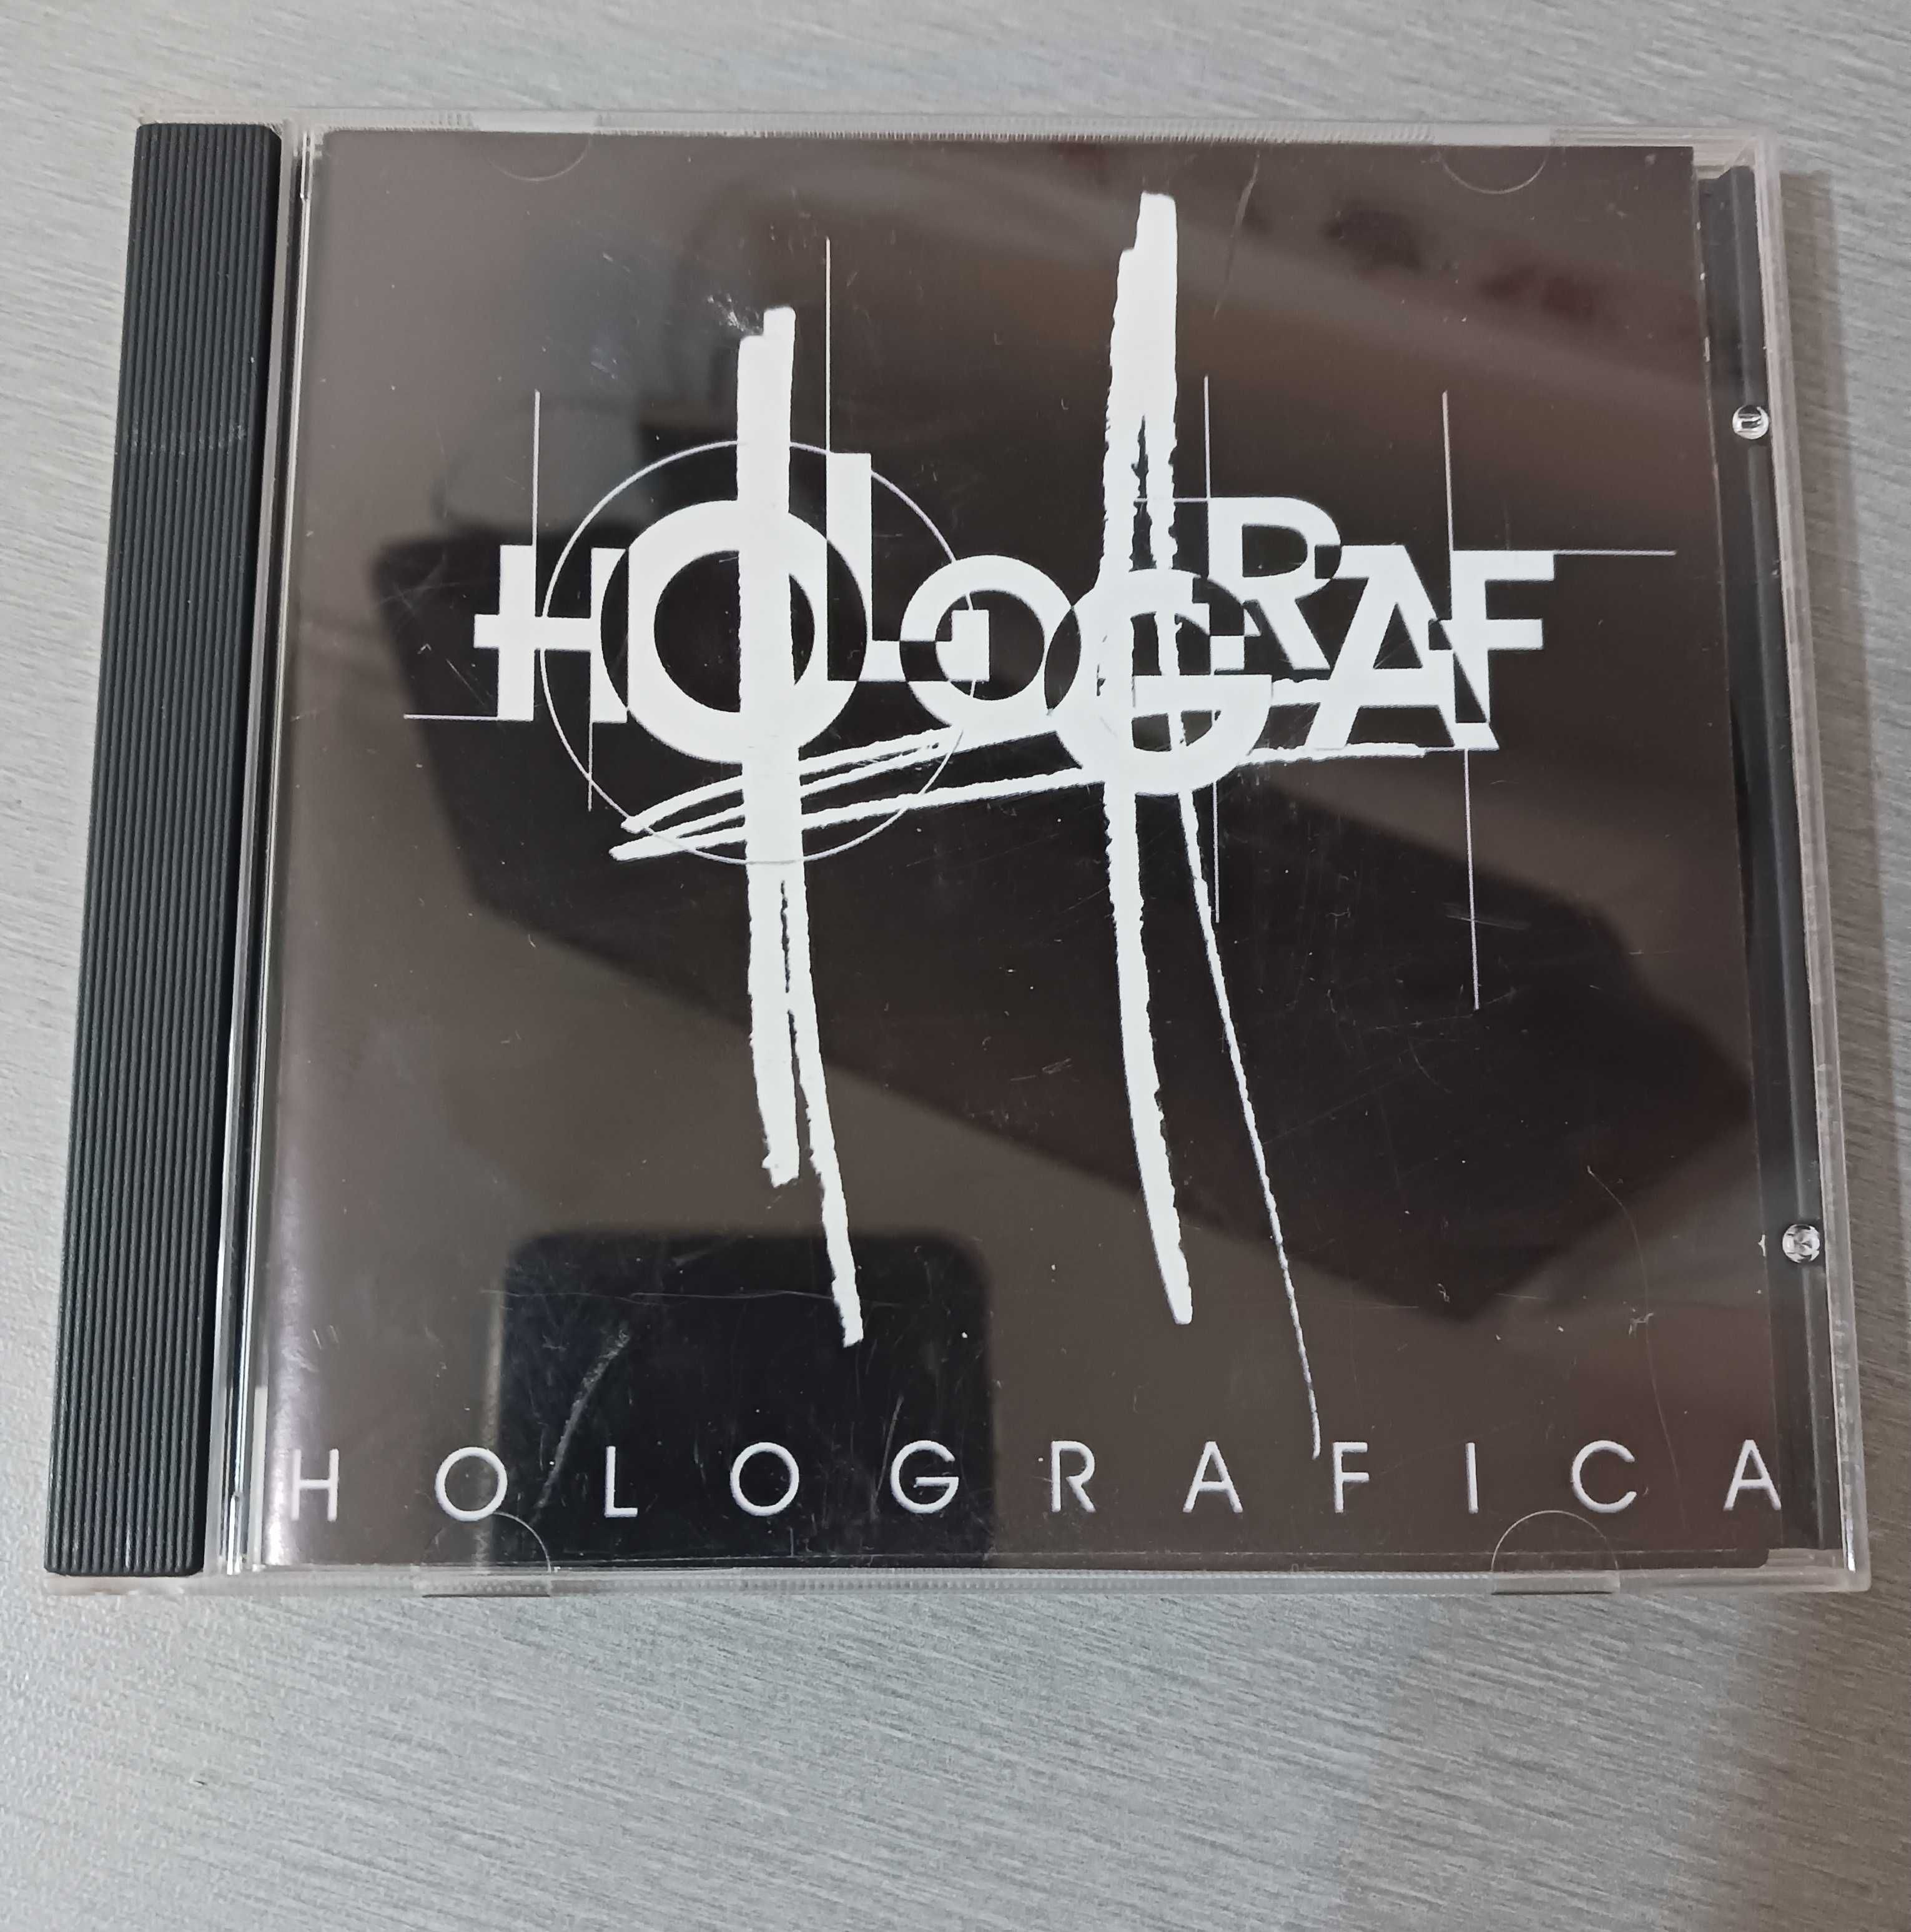 CD Holograf - album Holografica